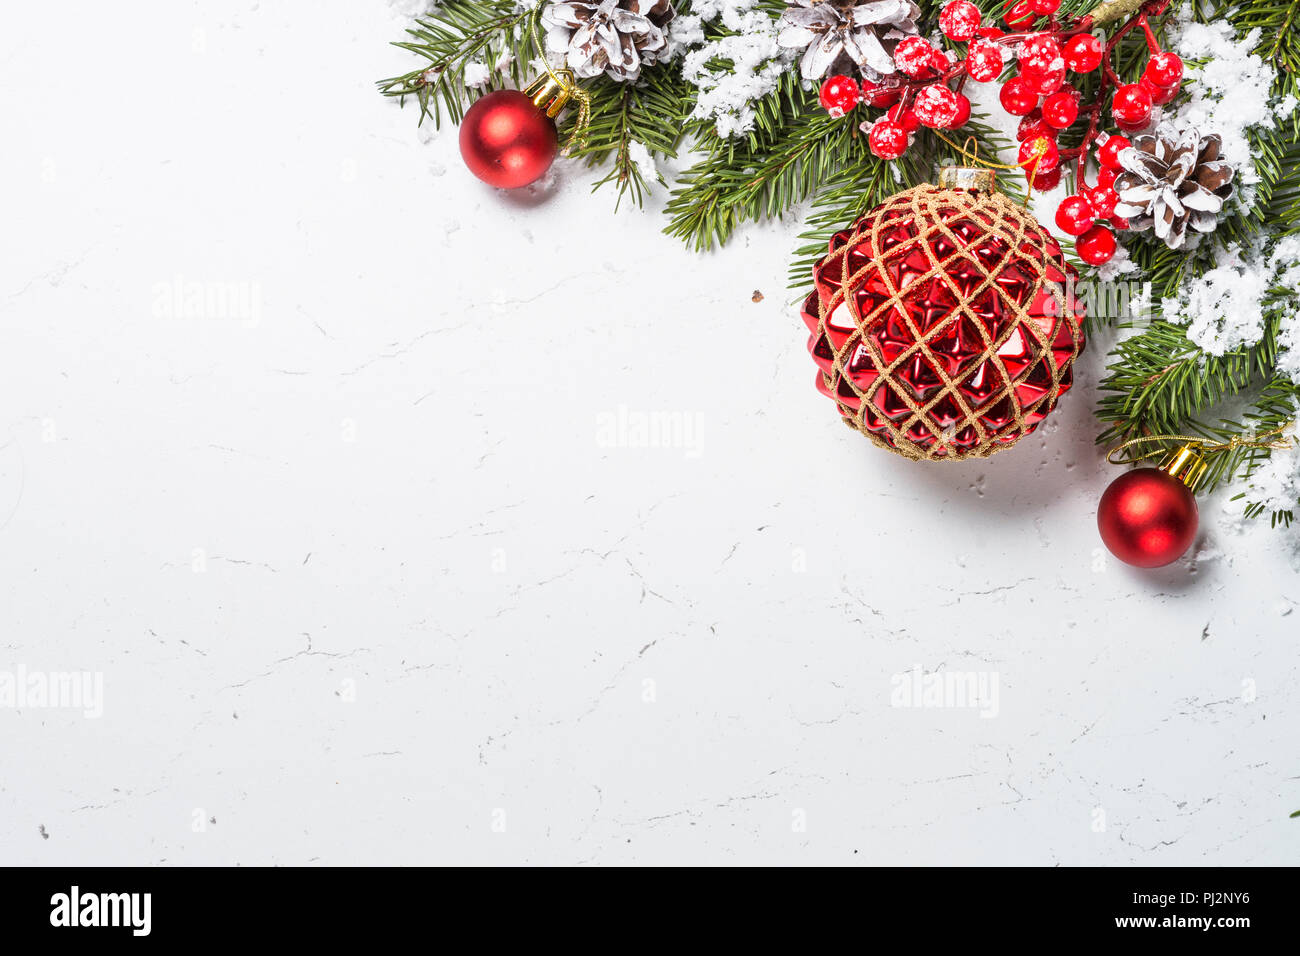 Những trang trí Giáng sinh đỏ rực trên nền trắng tinh khôi chắc chắn sẽ làm bạn say mê ngay từ cái nhìn đầu tiên. Với các hoa thị, đèn led và những chiếc bánh quy hình ngôi sao, không gì tuyệt vời hơn trong mùa lễ hội này.